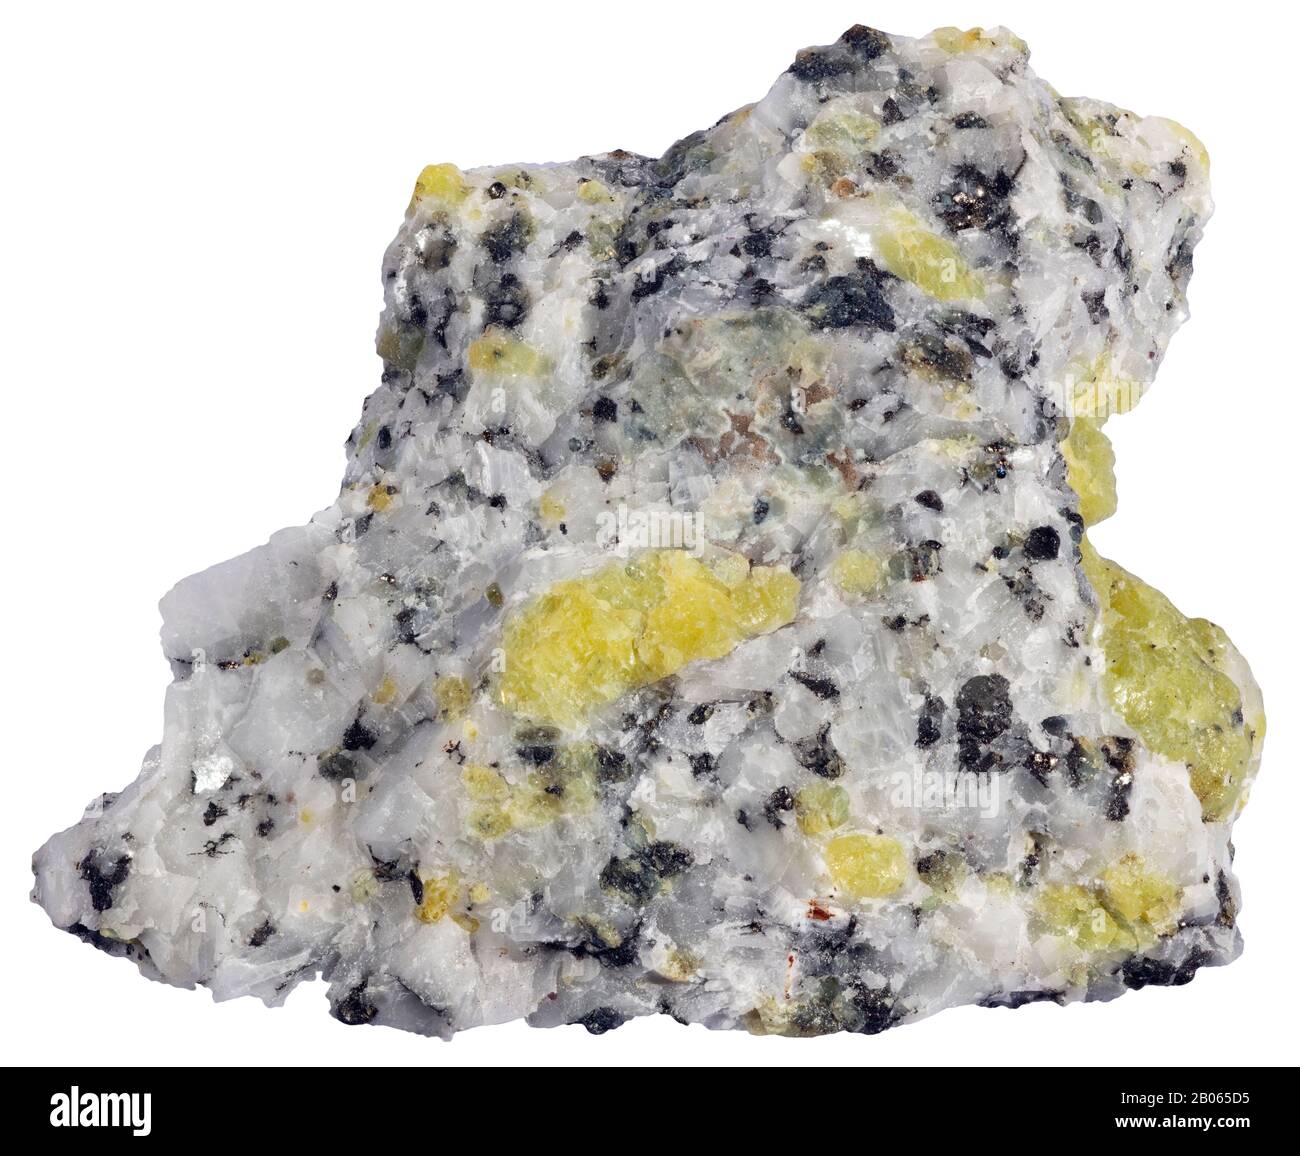 Chestermanite, Métamorphisme de contact, Wakefield (Québec) Chestermanite est un minéral orthorhombique-dipyramide contenant de l'aluminium, de l'antimoine, du bore, du fer Banque D'Images